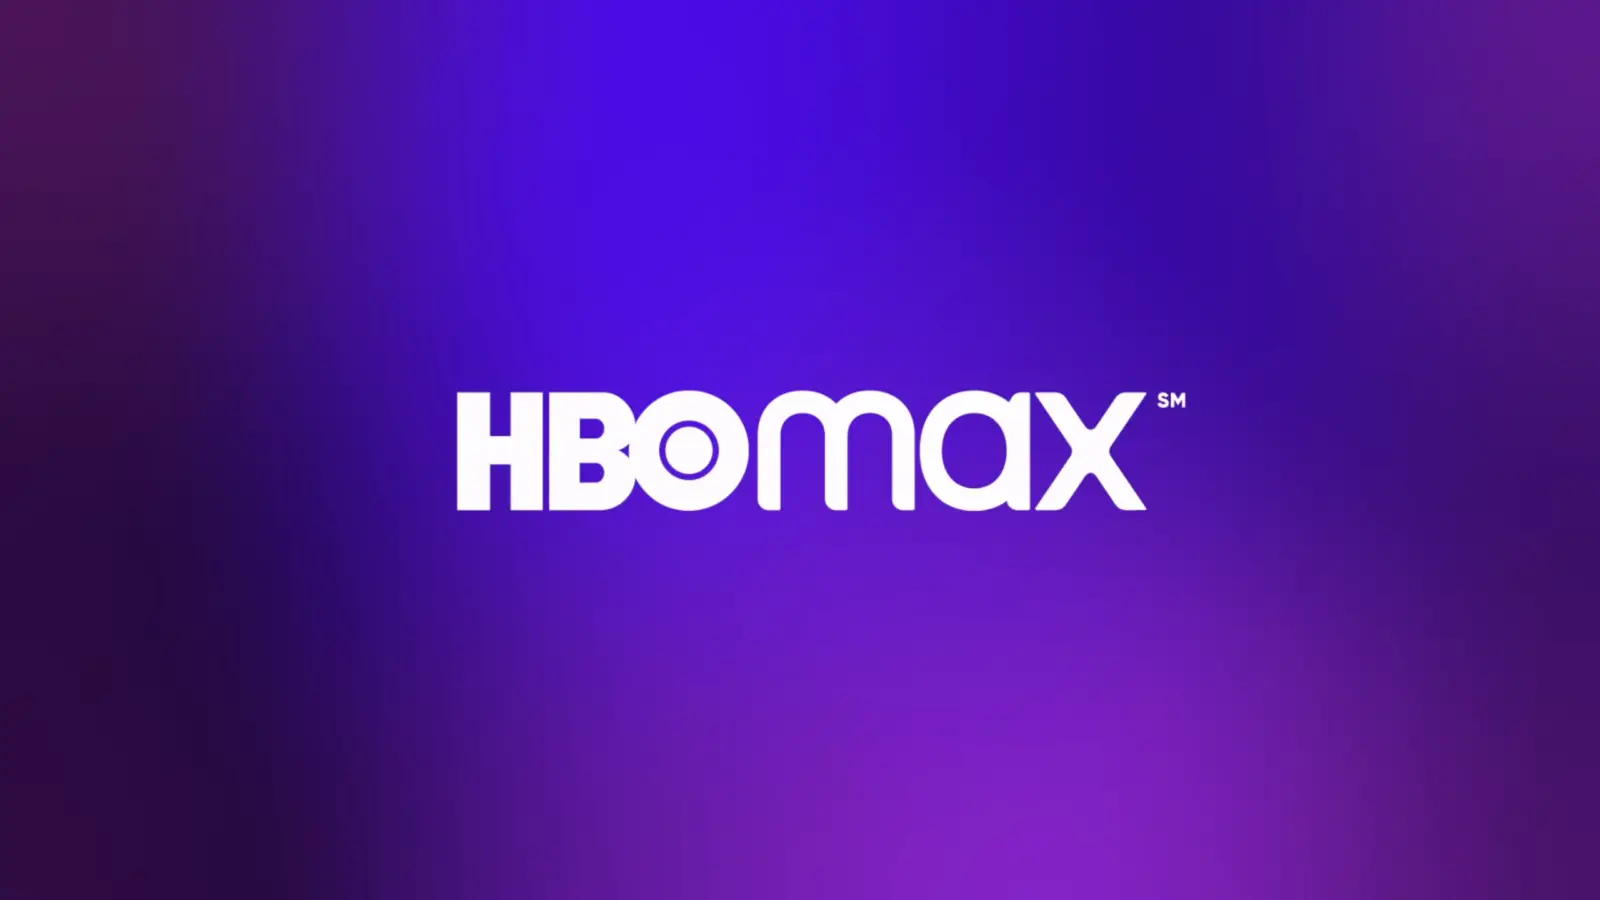 Logo HBO Max